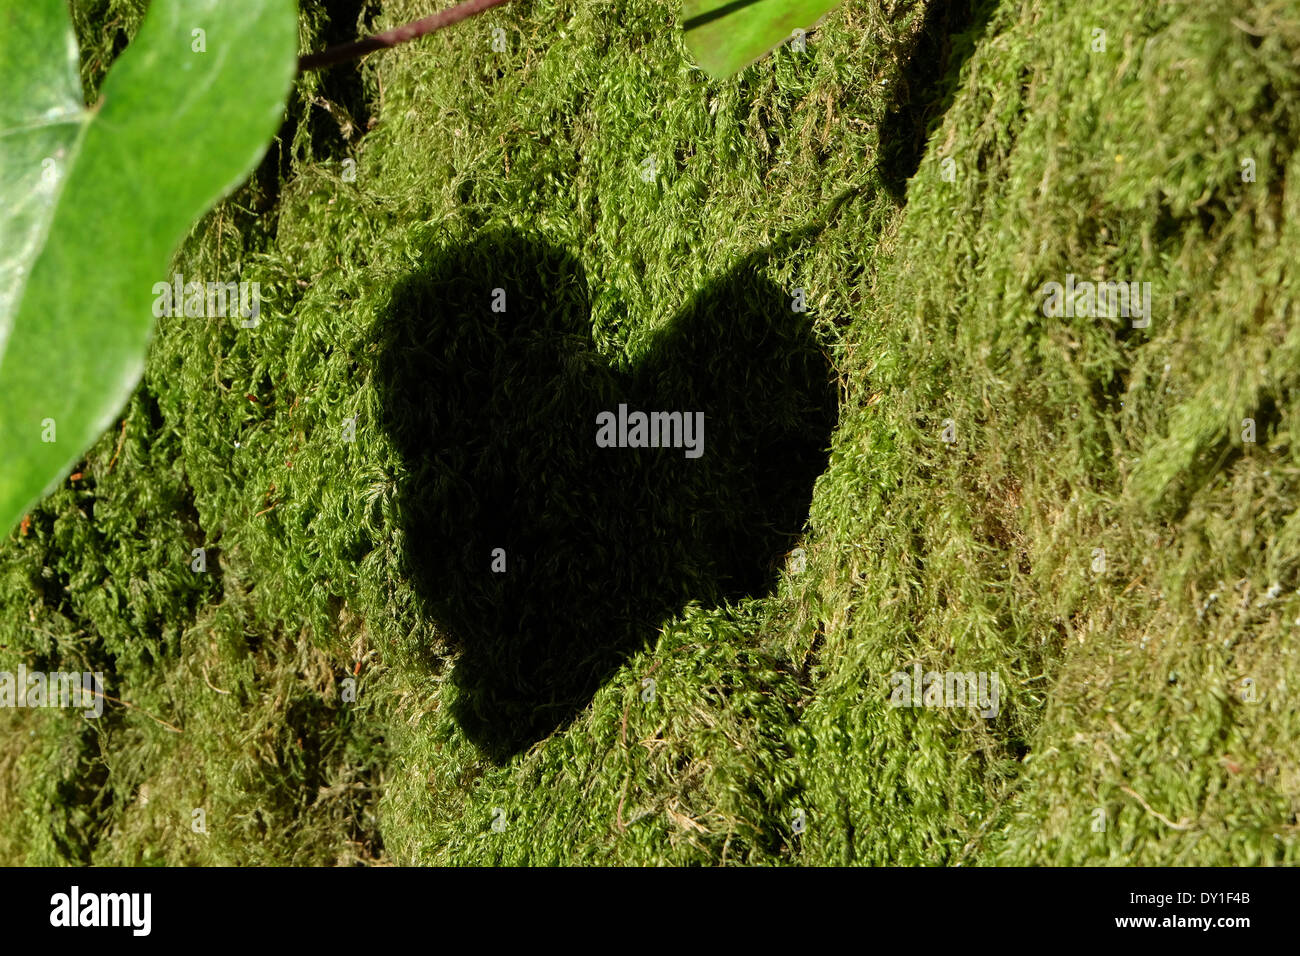 Hojas en forma de corazón sombra sobre troncos de árboles cubiertos de musgo verde Foto de stock